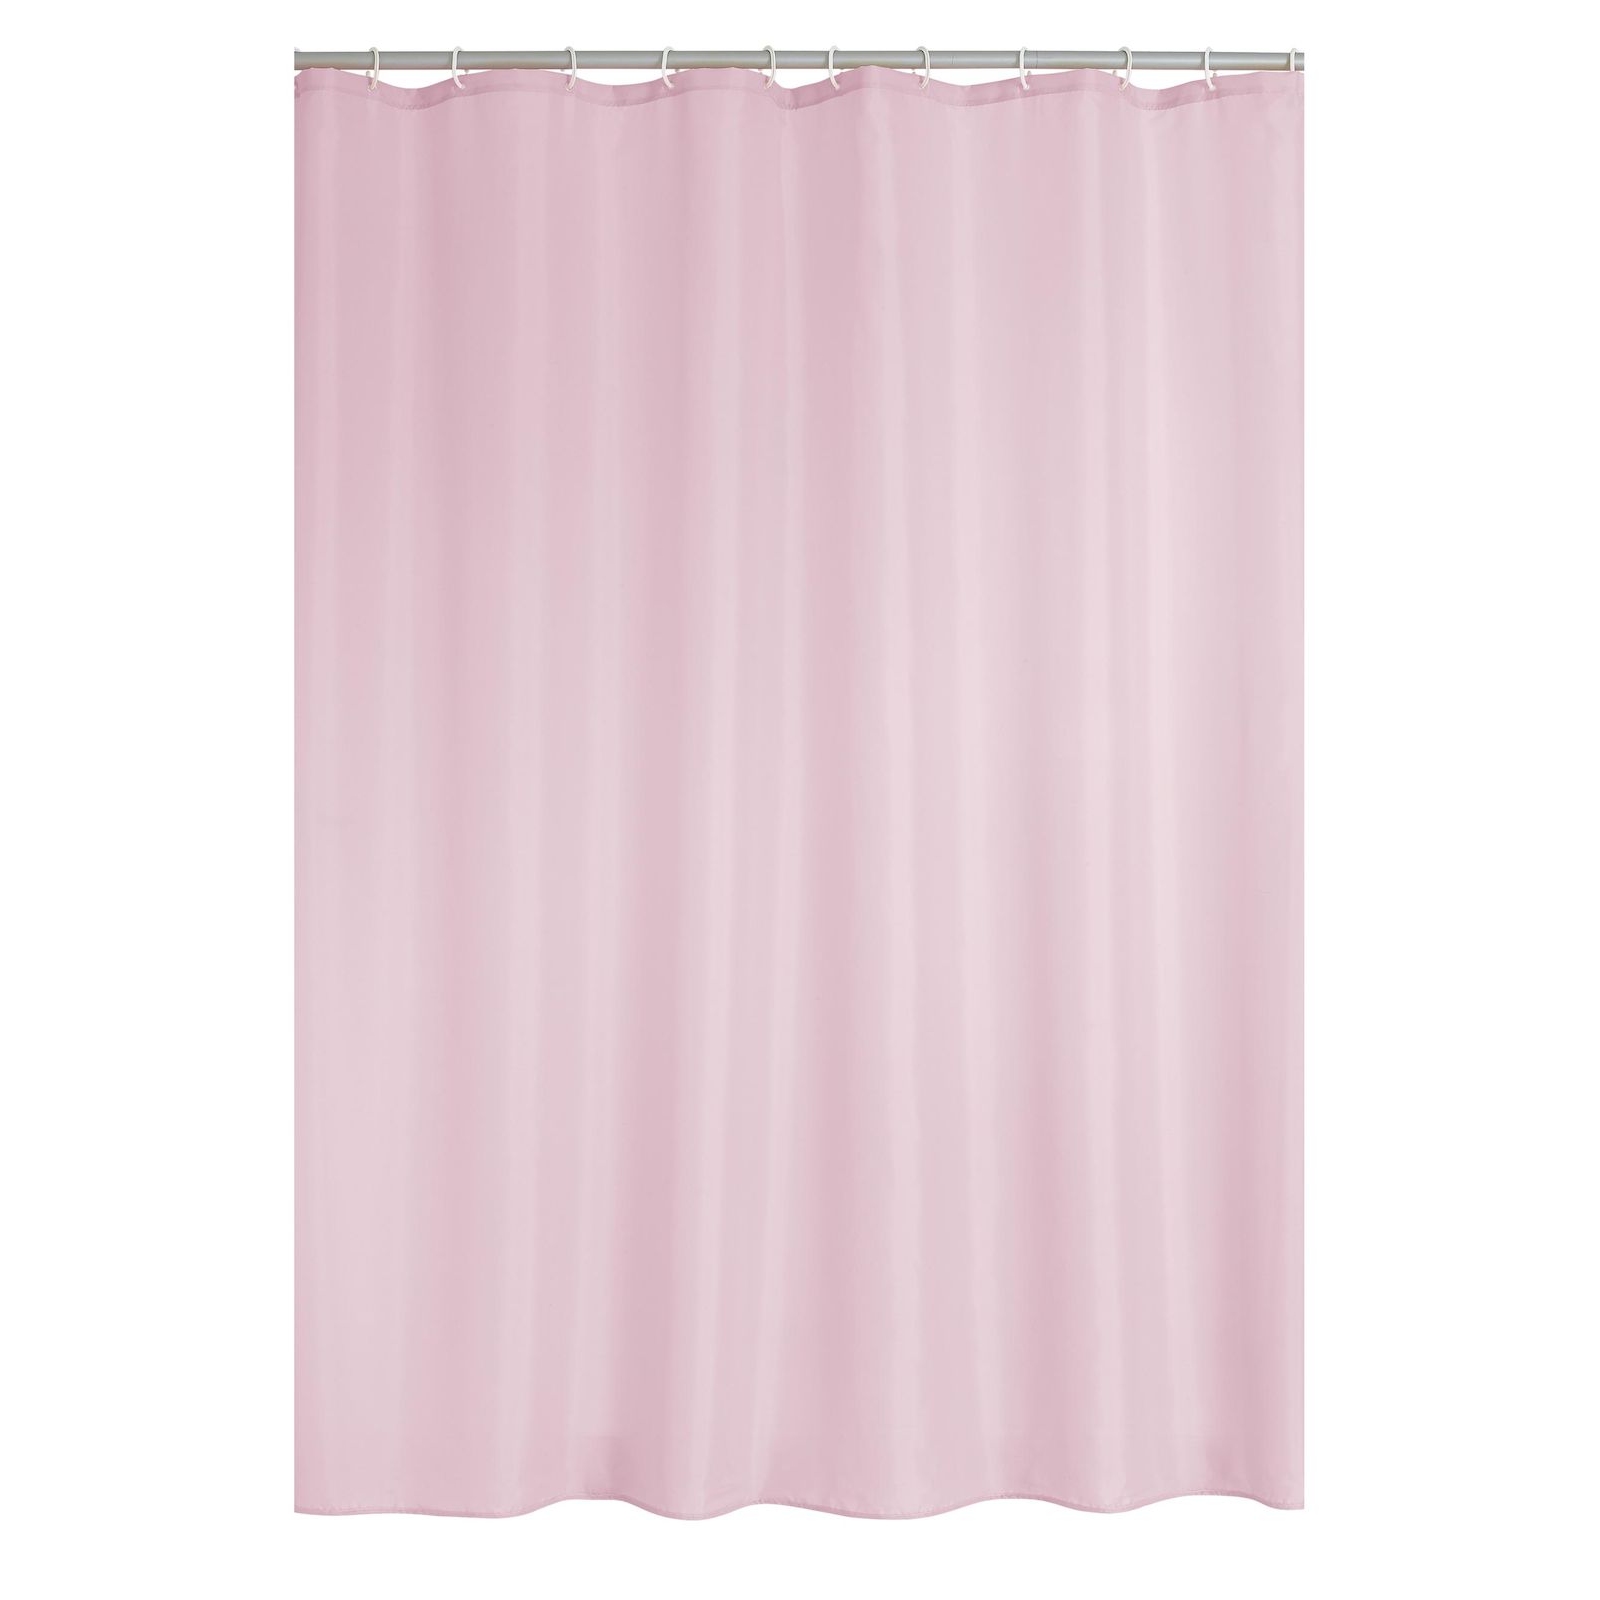 Штора для ванной Ridder Madison розовая 200х180 см штора для ванной ridder wellness разноцветная 200х180 см